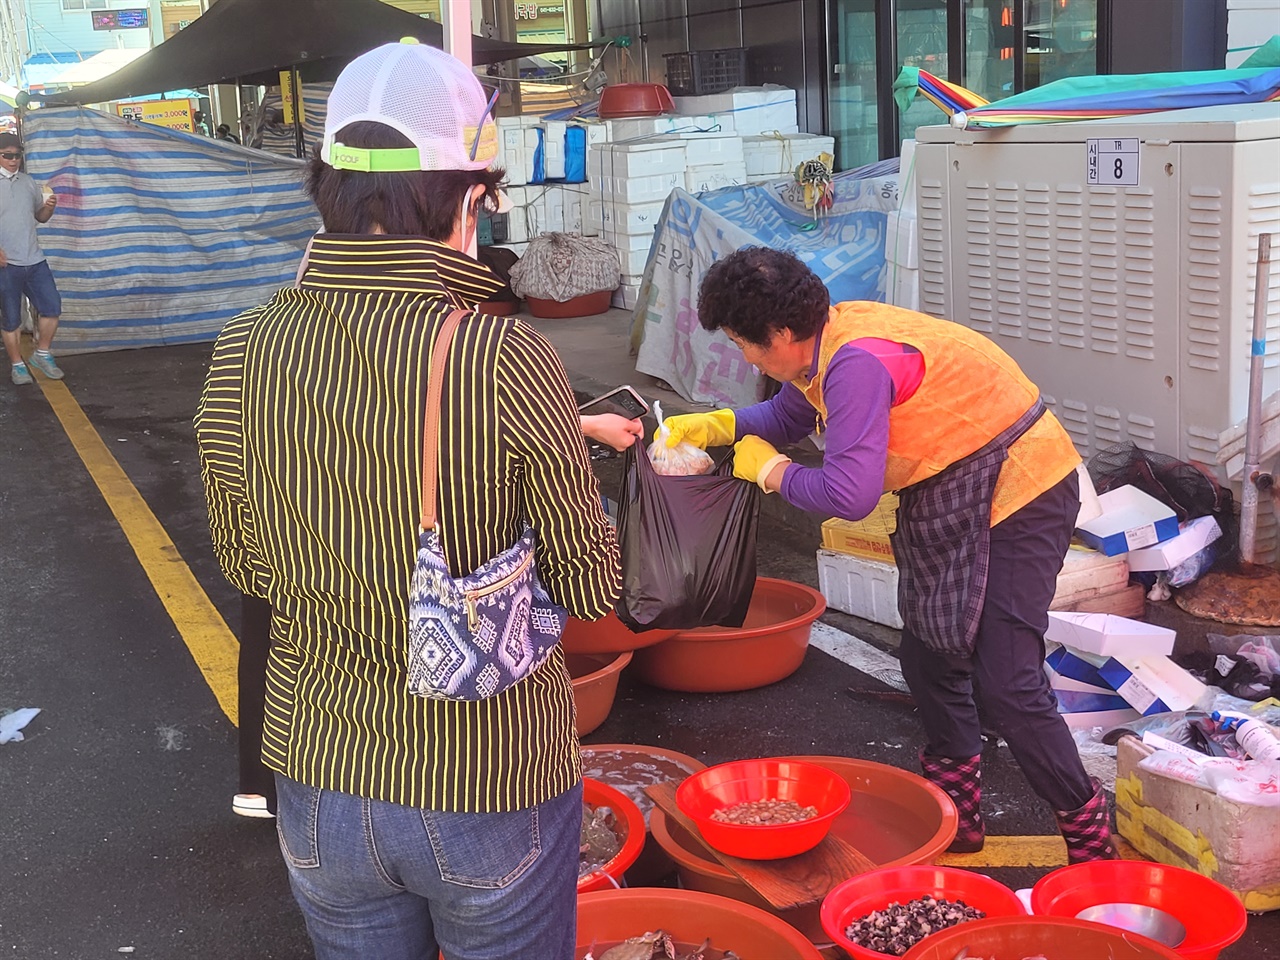 추석을 하루 앞둔 9일 홍성전통시장은 정오를 지난 시간임에도 여전히 제수용품을 구입하기 위해 군민들이 찾으면서, 모처럼 활기를 띠고 있다.